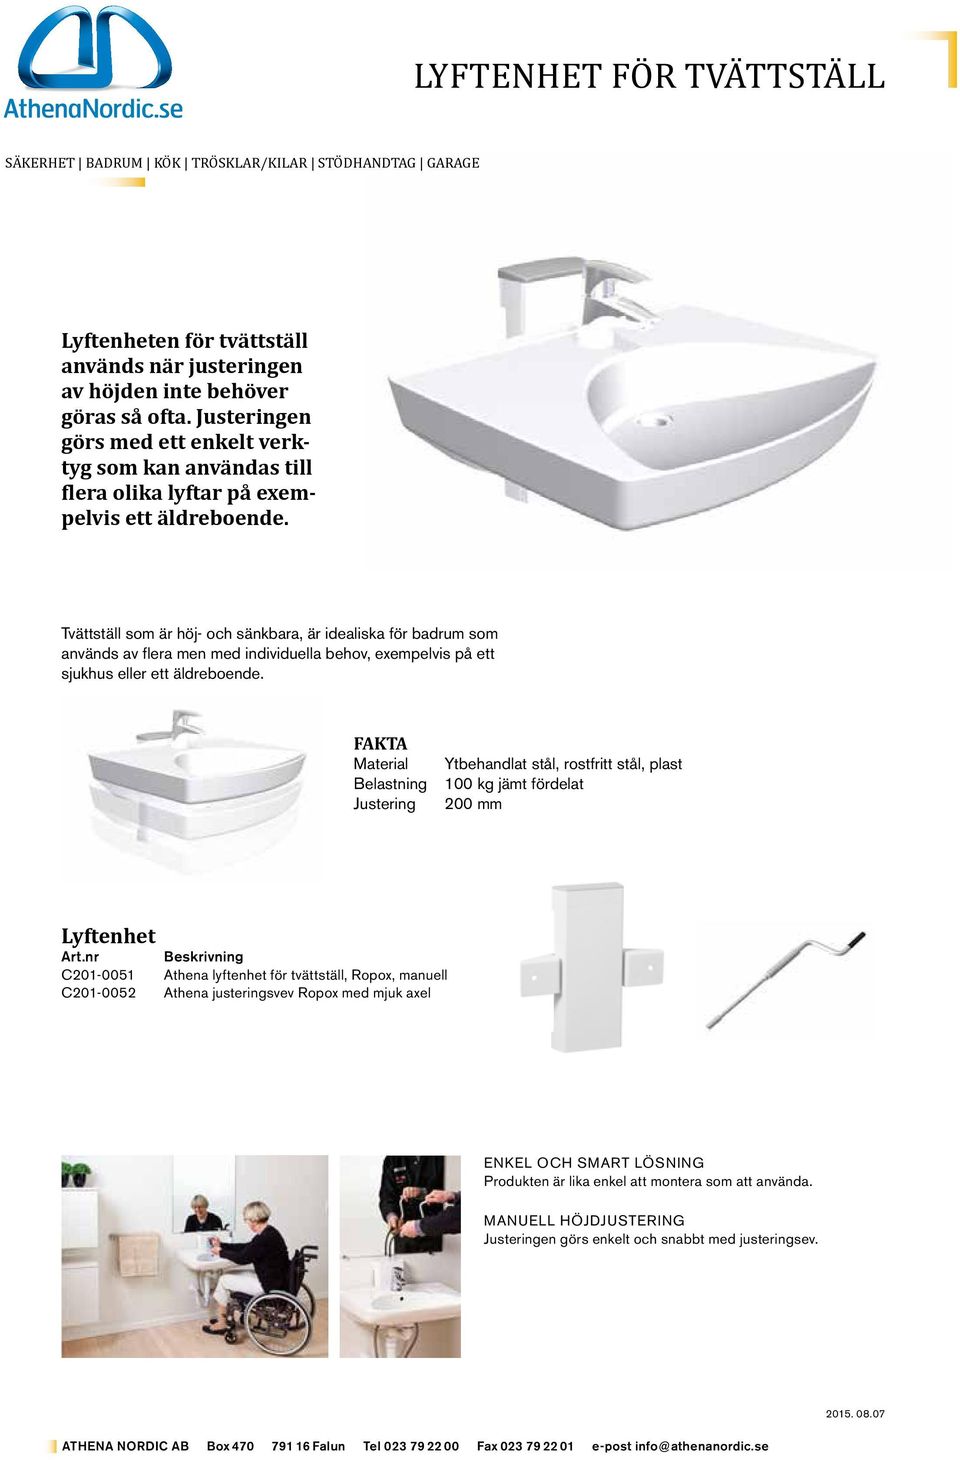 Tvättställ som är höj- och sänkbara, är idealiska för badrum som används av flera men med individuella behov, exempelvis på ett sjukhus eller ett äldreboende.